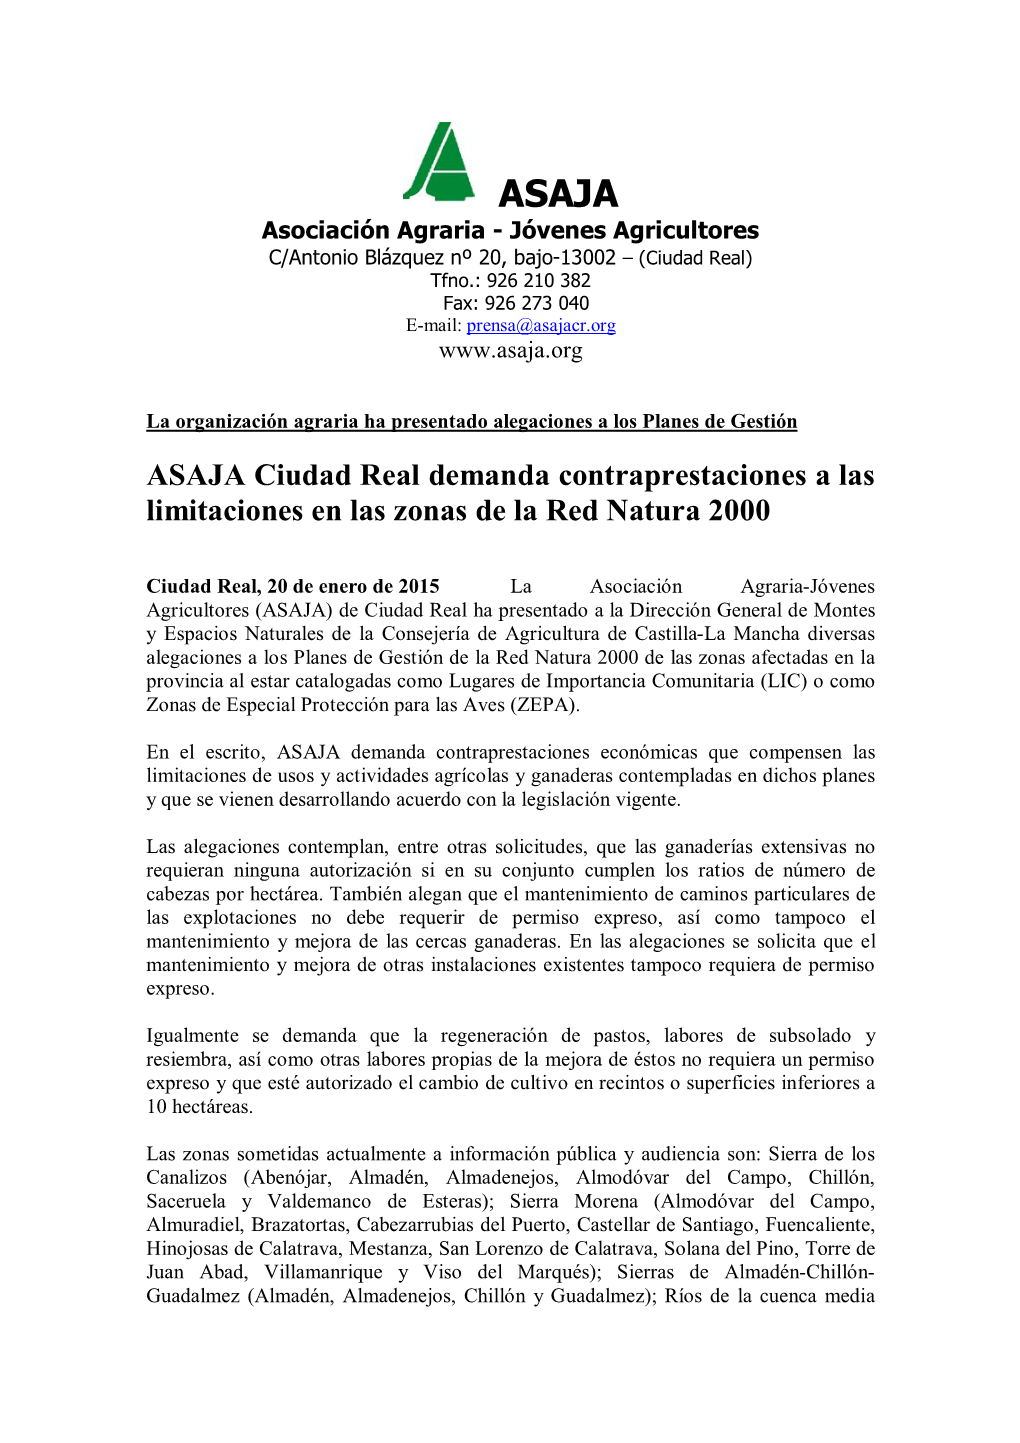 ASAJA Ciudad Real Demanda Contraprestaciones a Las Limitaciones En Las Zonas De La Red Natura 2000